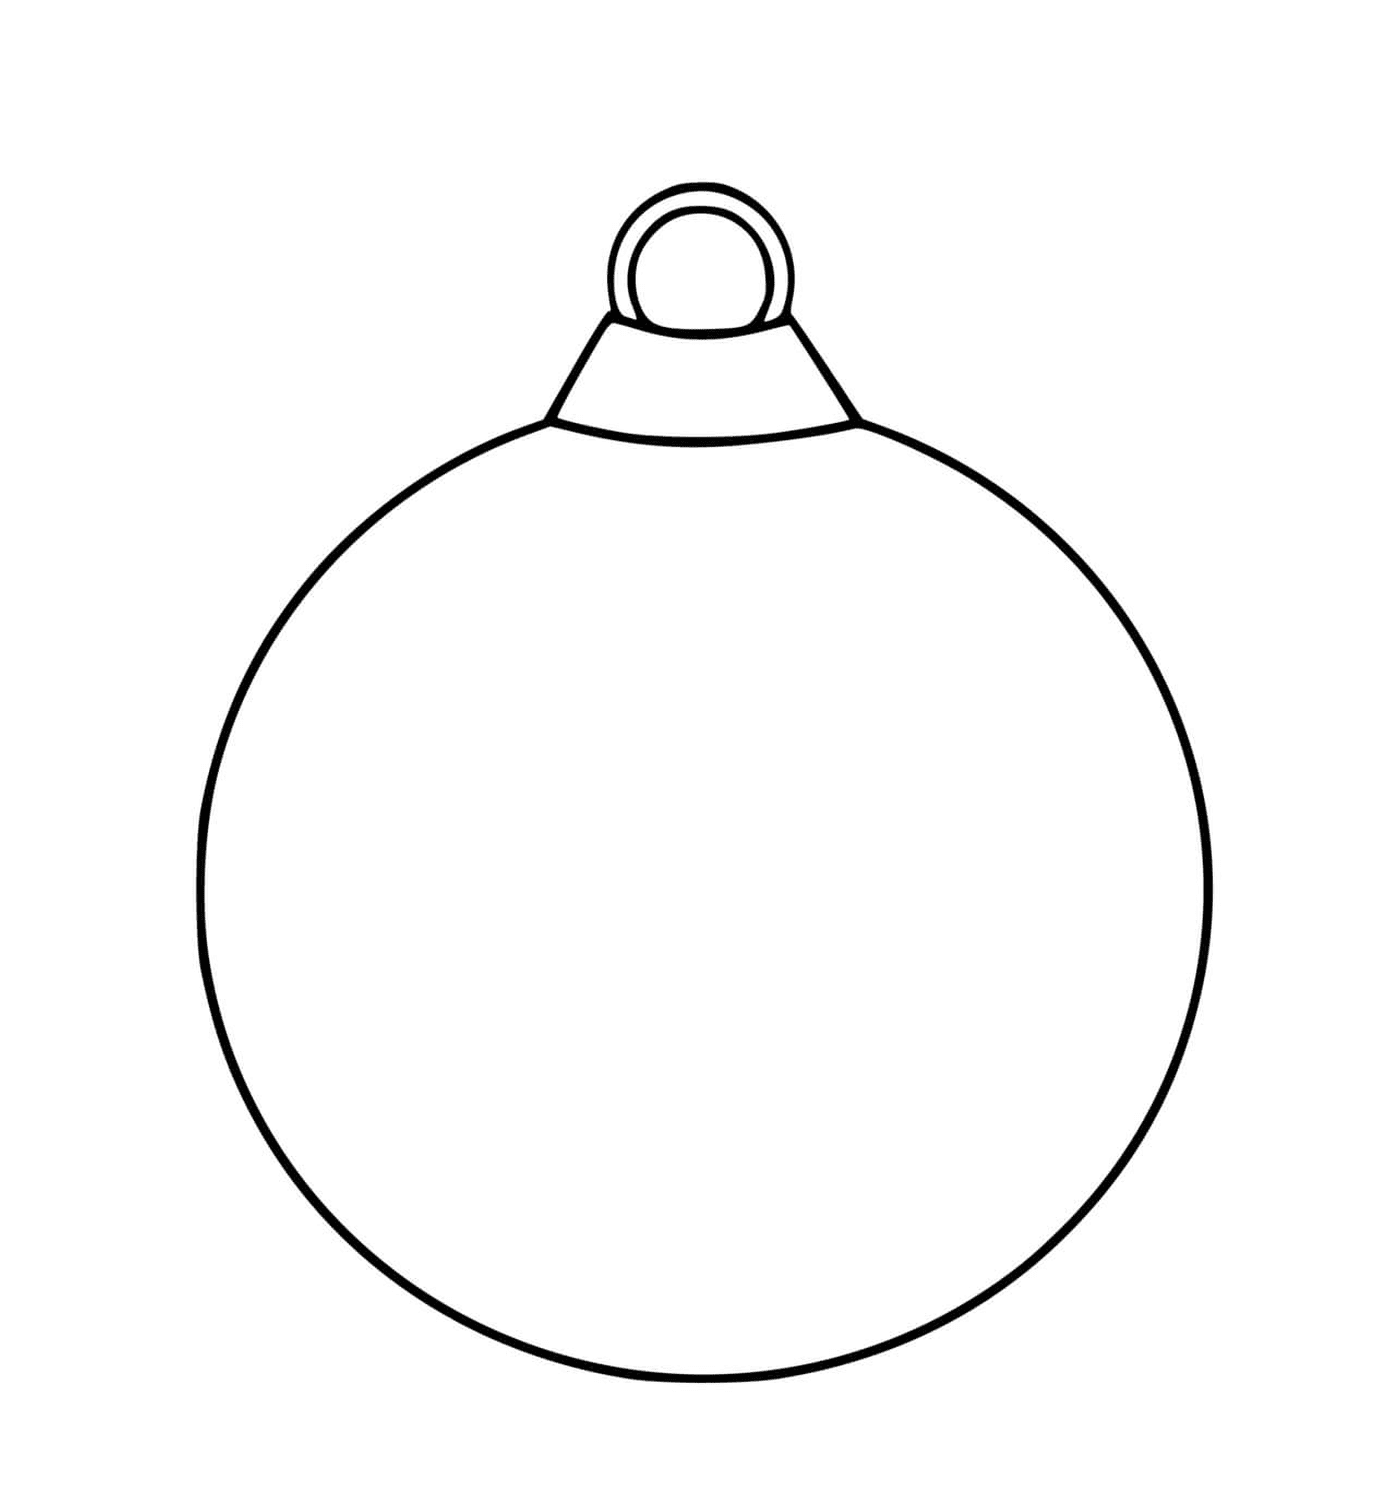  Una bola de Navidad vacía con un simple contorno negro 